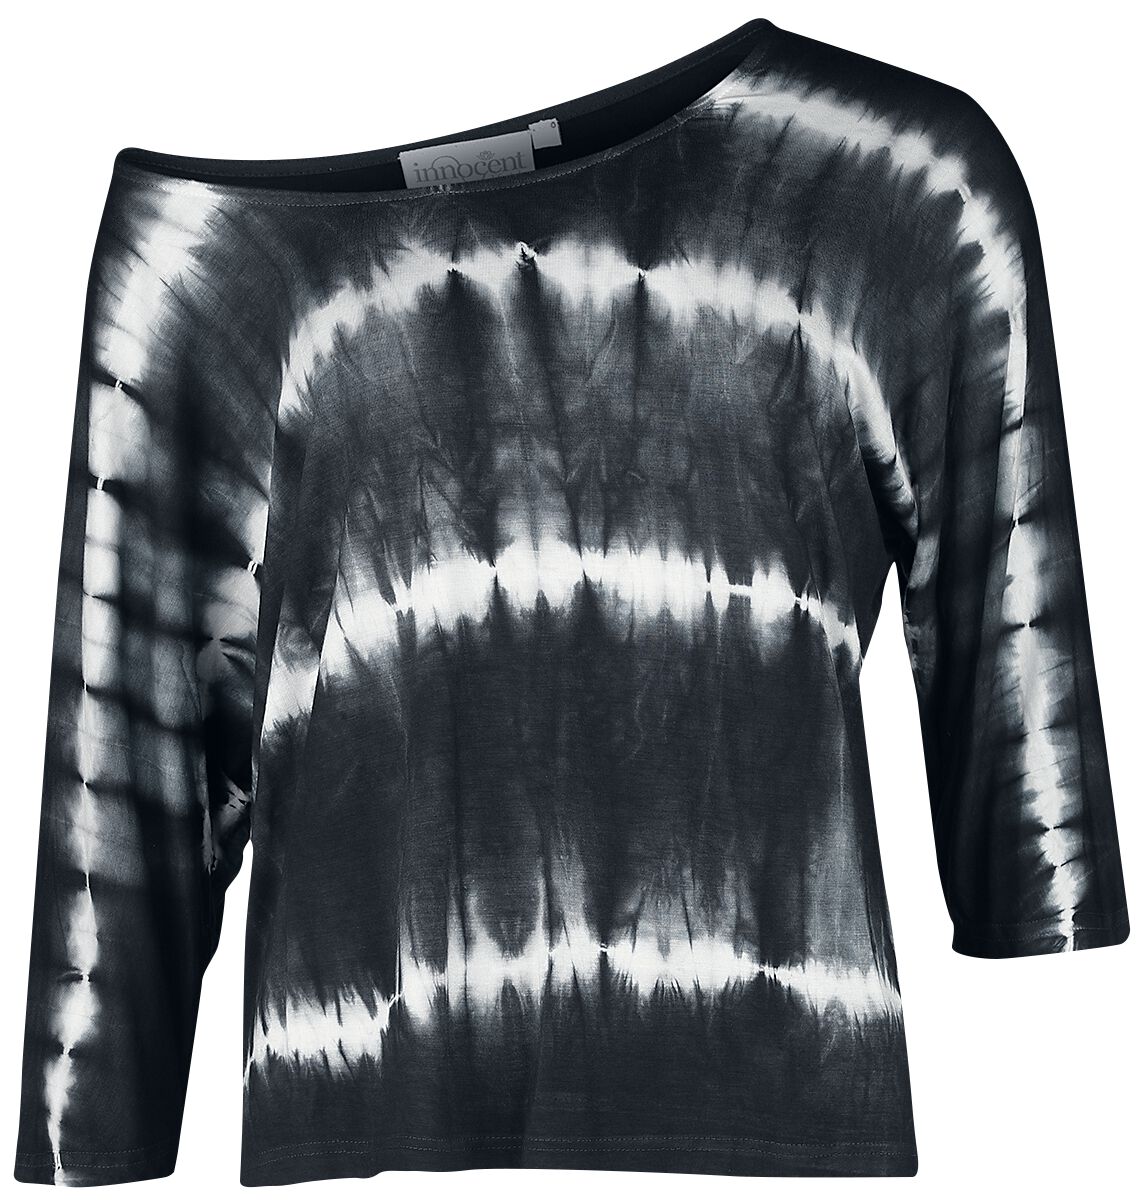 Innocent - Gothic Langarmshirt - Solana Top - XS bis 4XL - für Damen - Größe 4XL - schwarz/weiß von innocent